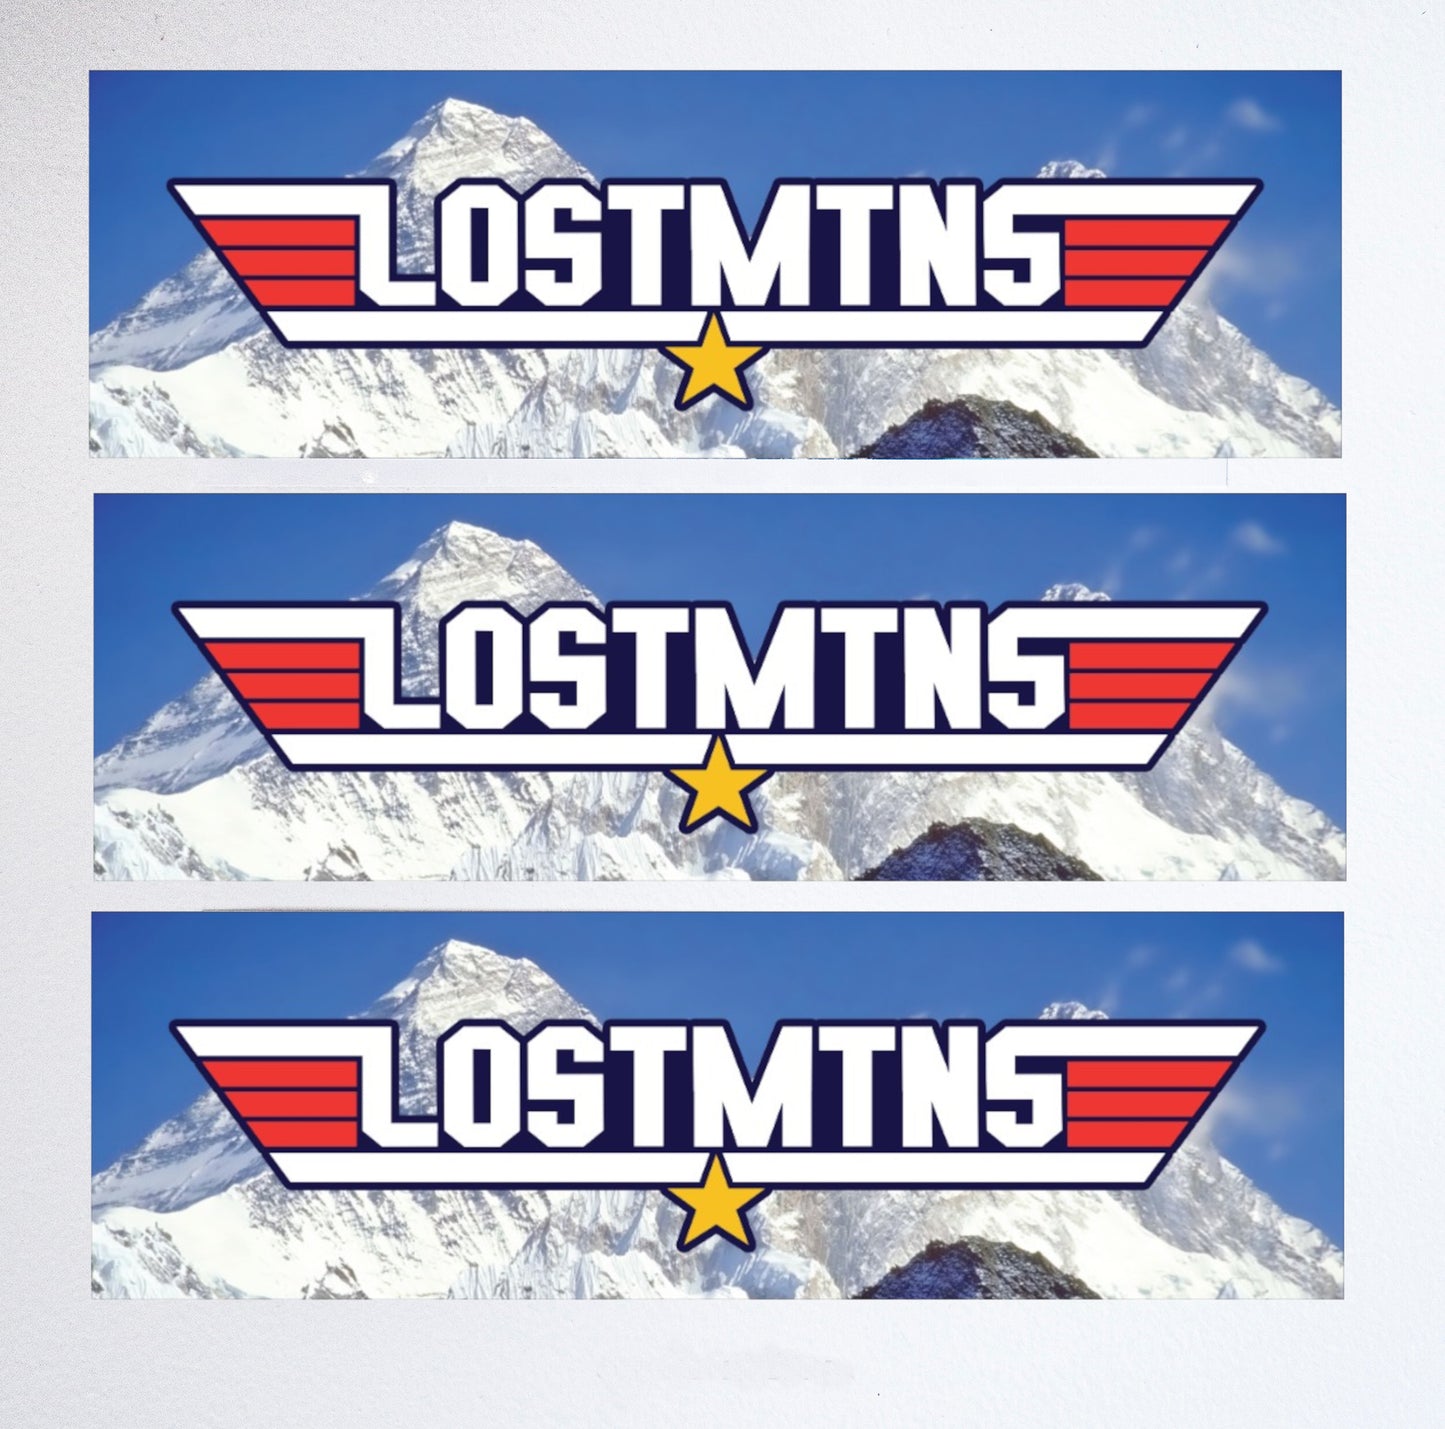 #LOSTMTNS vinyl bumper stickers